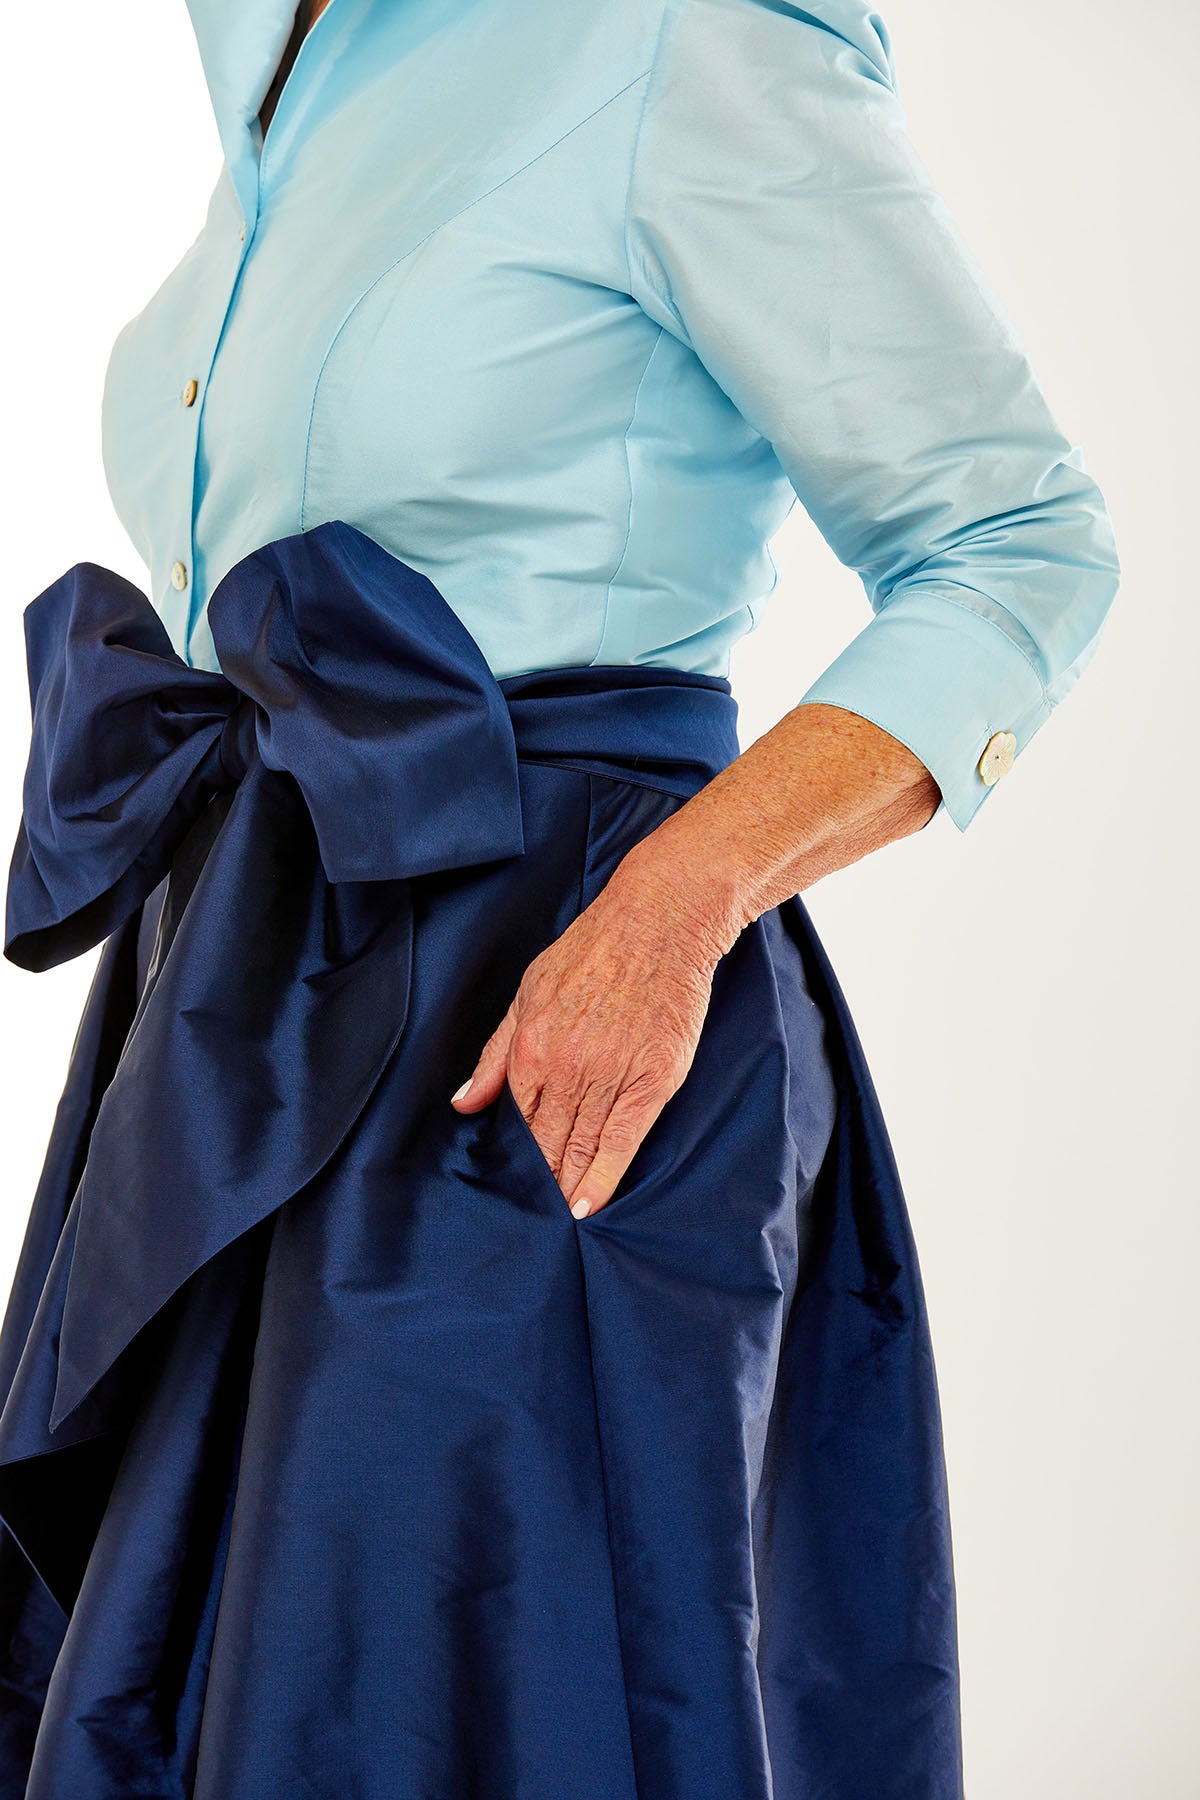 Woman in light blue/navy dress